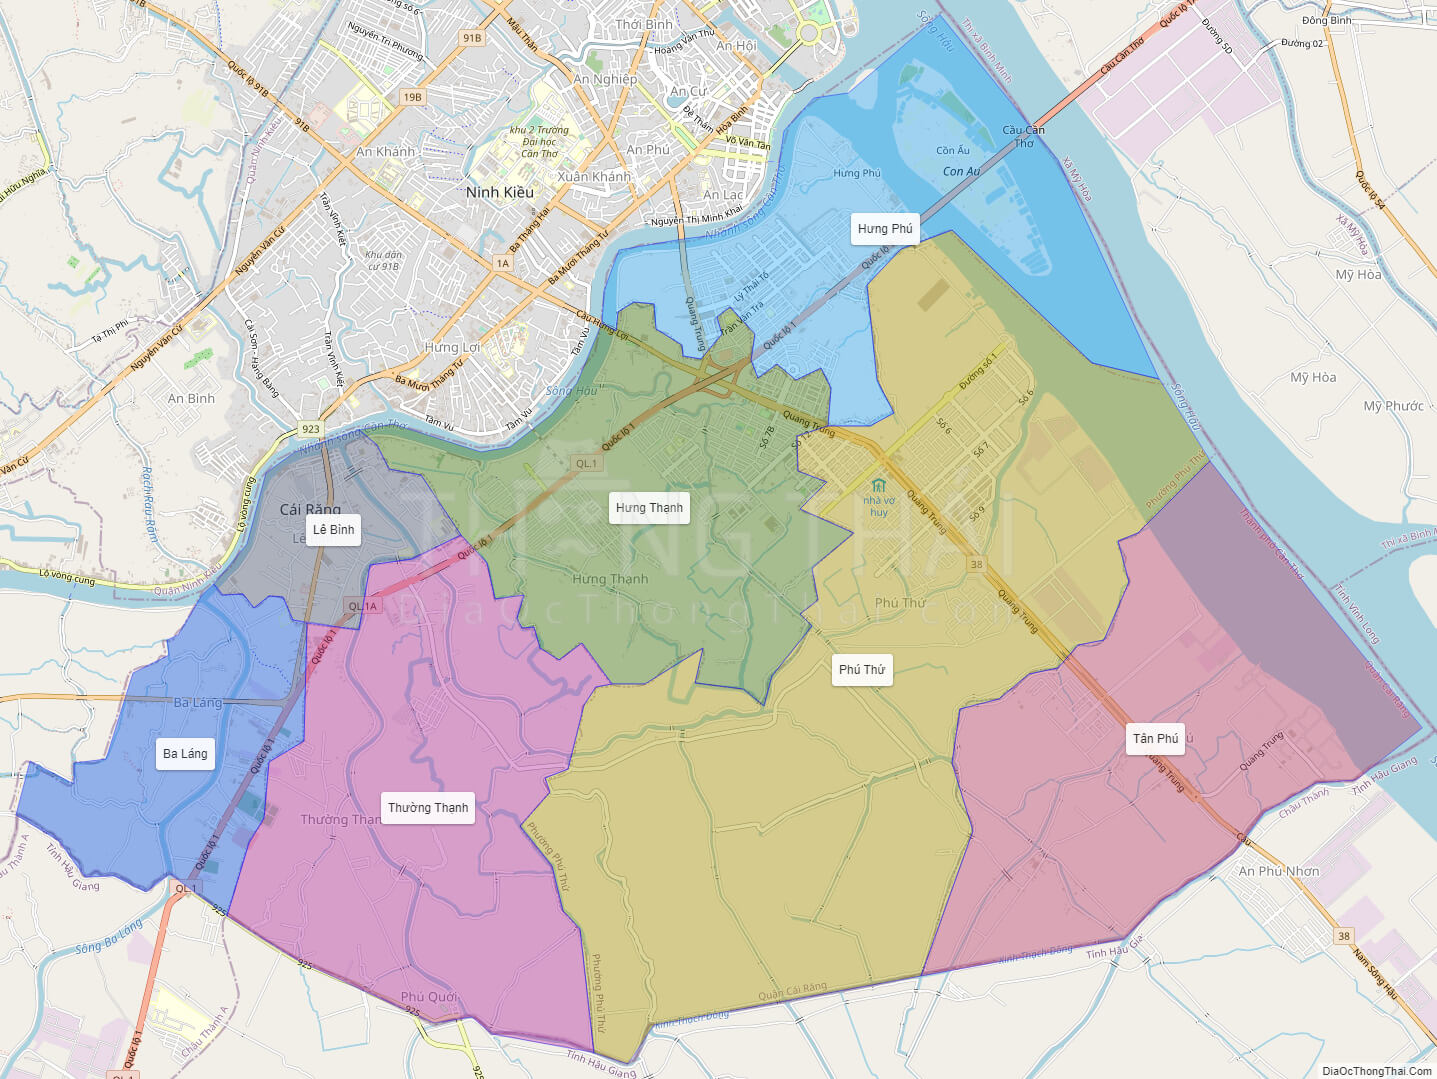 Bản đồ quy hoạch mới nhất sẽ giúp bạn có được cái nhìn toàn cảnh về các dự án và khu vực đang được phát triển trong thành phố. Với bản đồ này, bạn có thể lựa chọn nơi sống và làm việc phù hợp nhất với mình. Hãy xem hình ảnh liên quan để có đầy đủ thông tin.